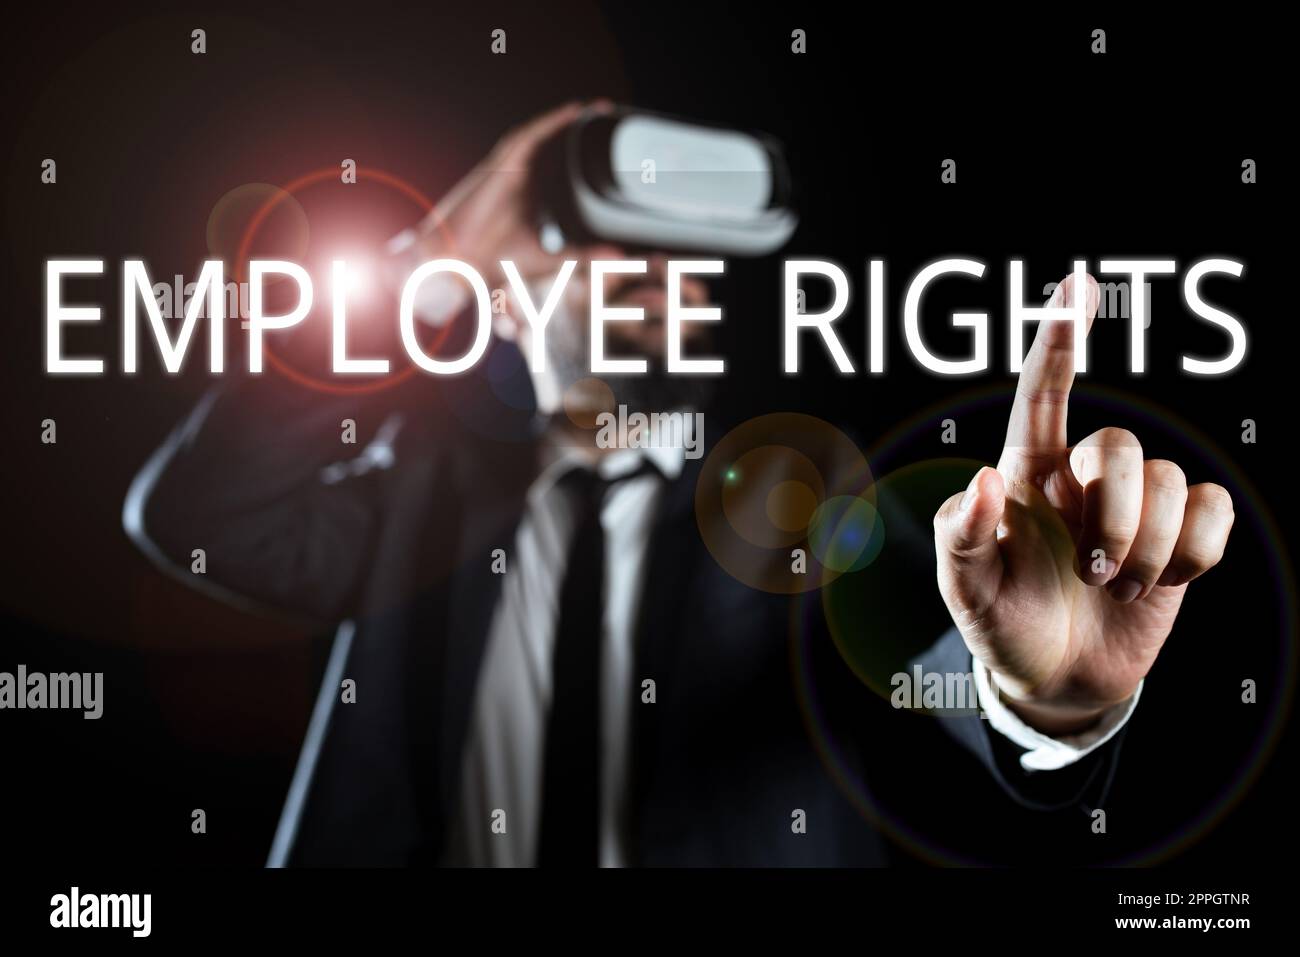 Konzeptionelle Anzeige Rechte Mitarbeiter Alle Mitarbeiter haben grundlegende Rechte an ihrem eigenen Arbeitsplatz. Geschäftsansatz Alle Mitarbeiter haben grundlegende Rechte an ihrem eigenen Arbeitsplatz Stockfoto